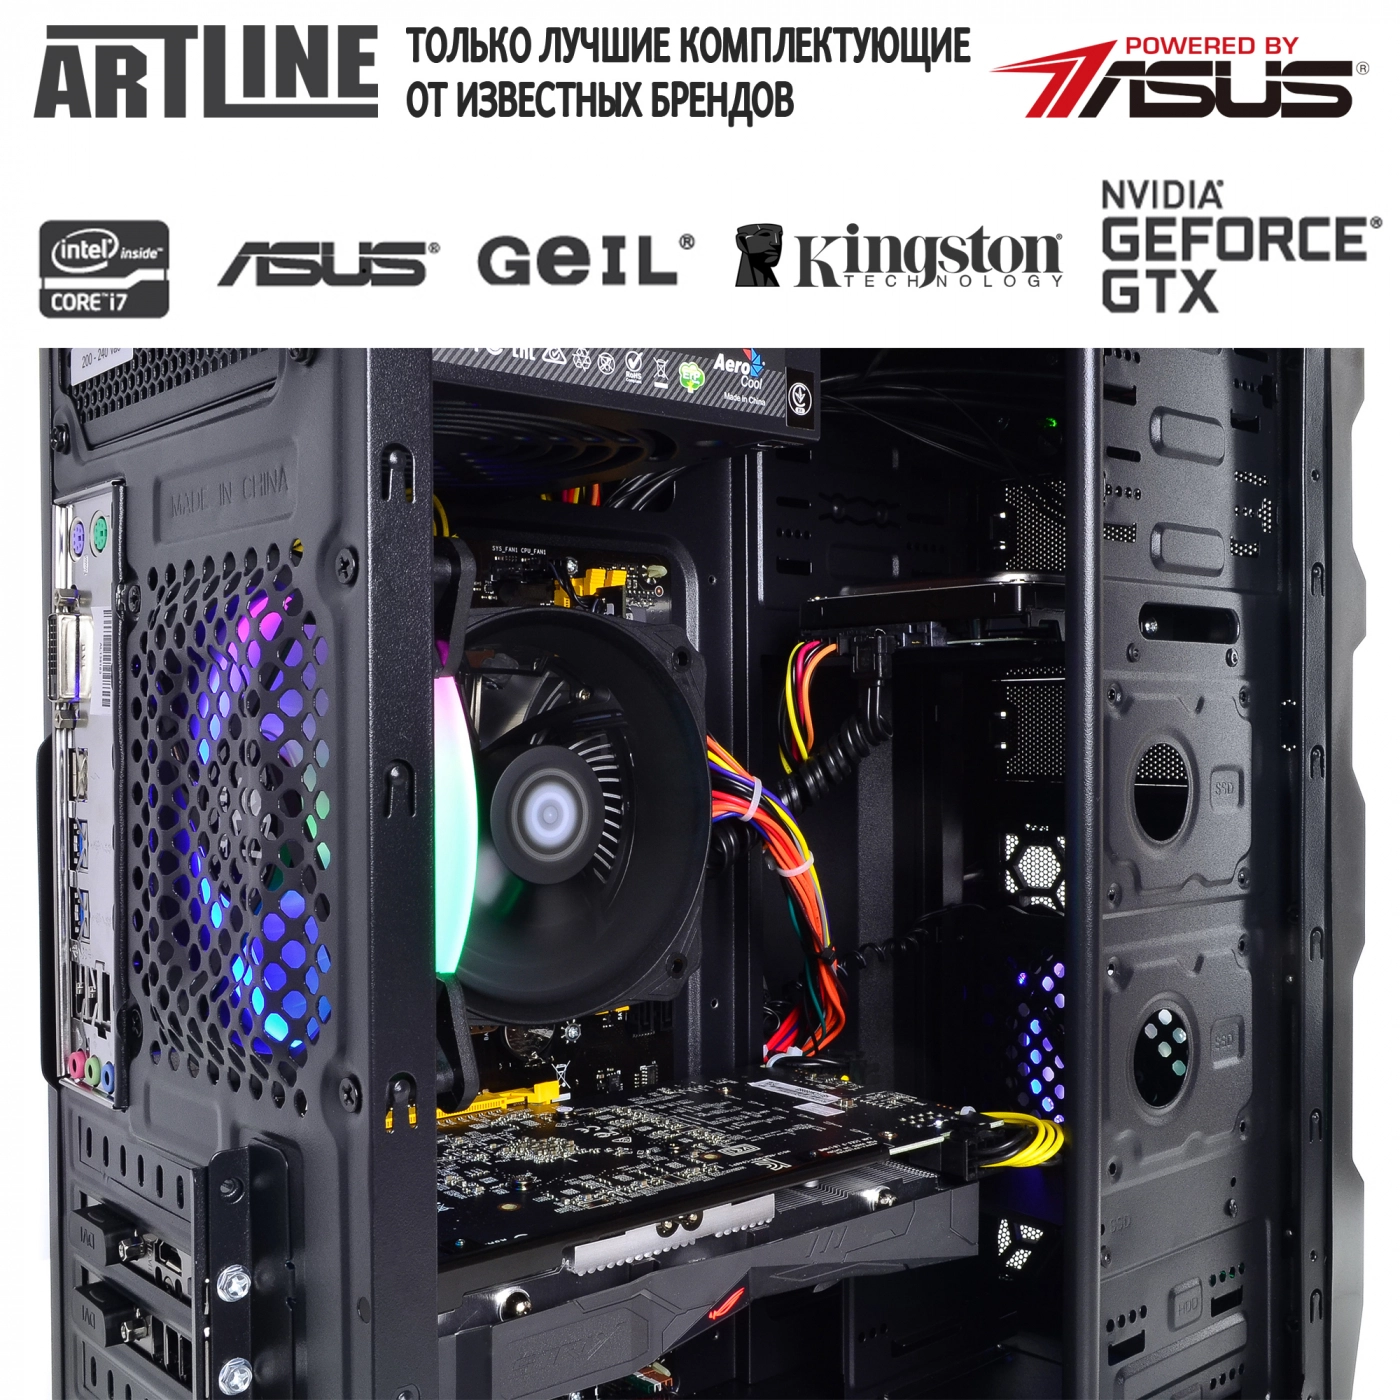 Купить Компьютер ARTLINE Gaming X45v18 - фото 6